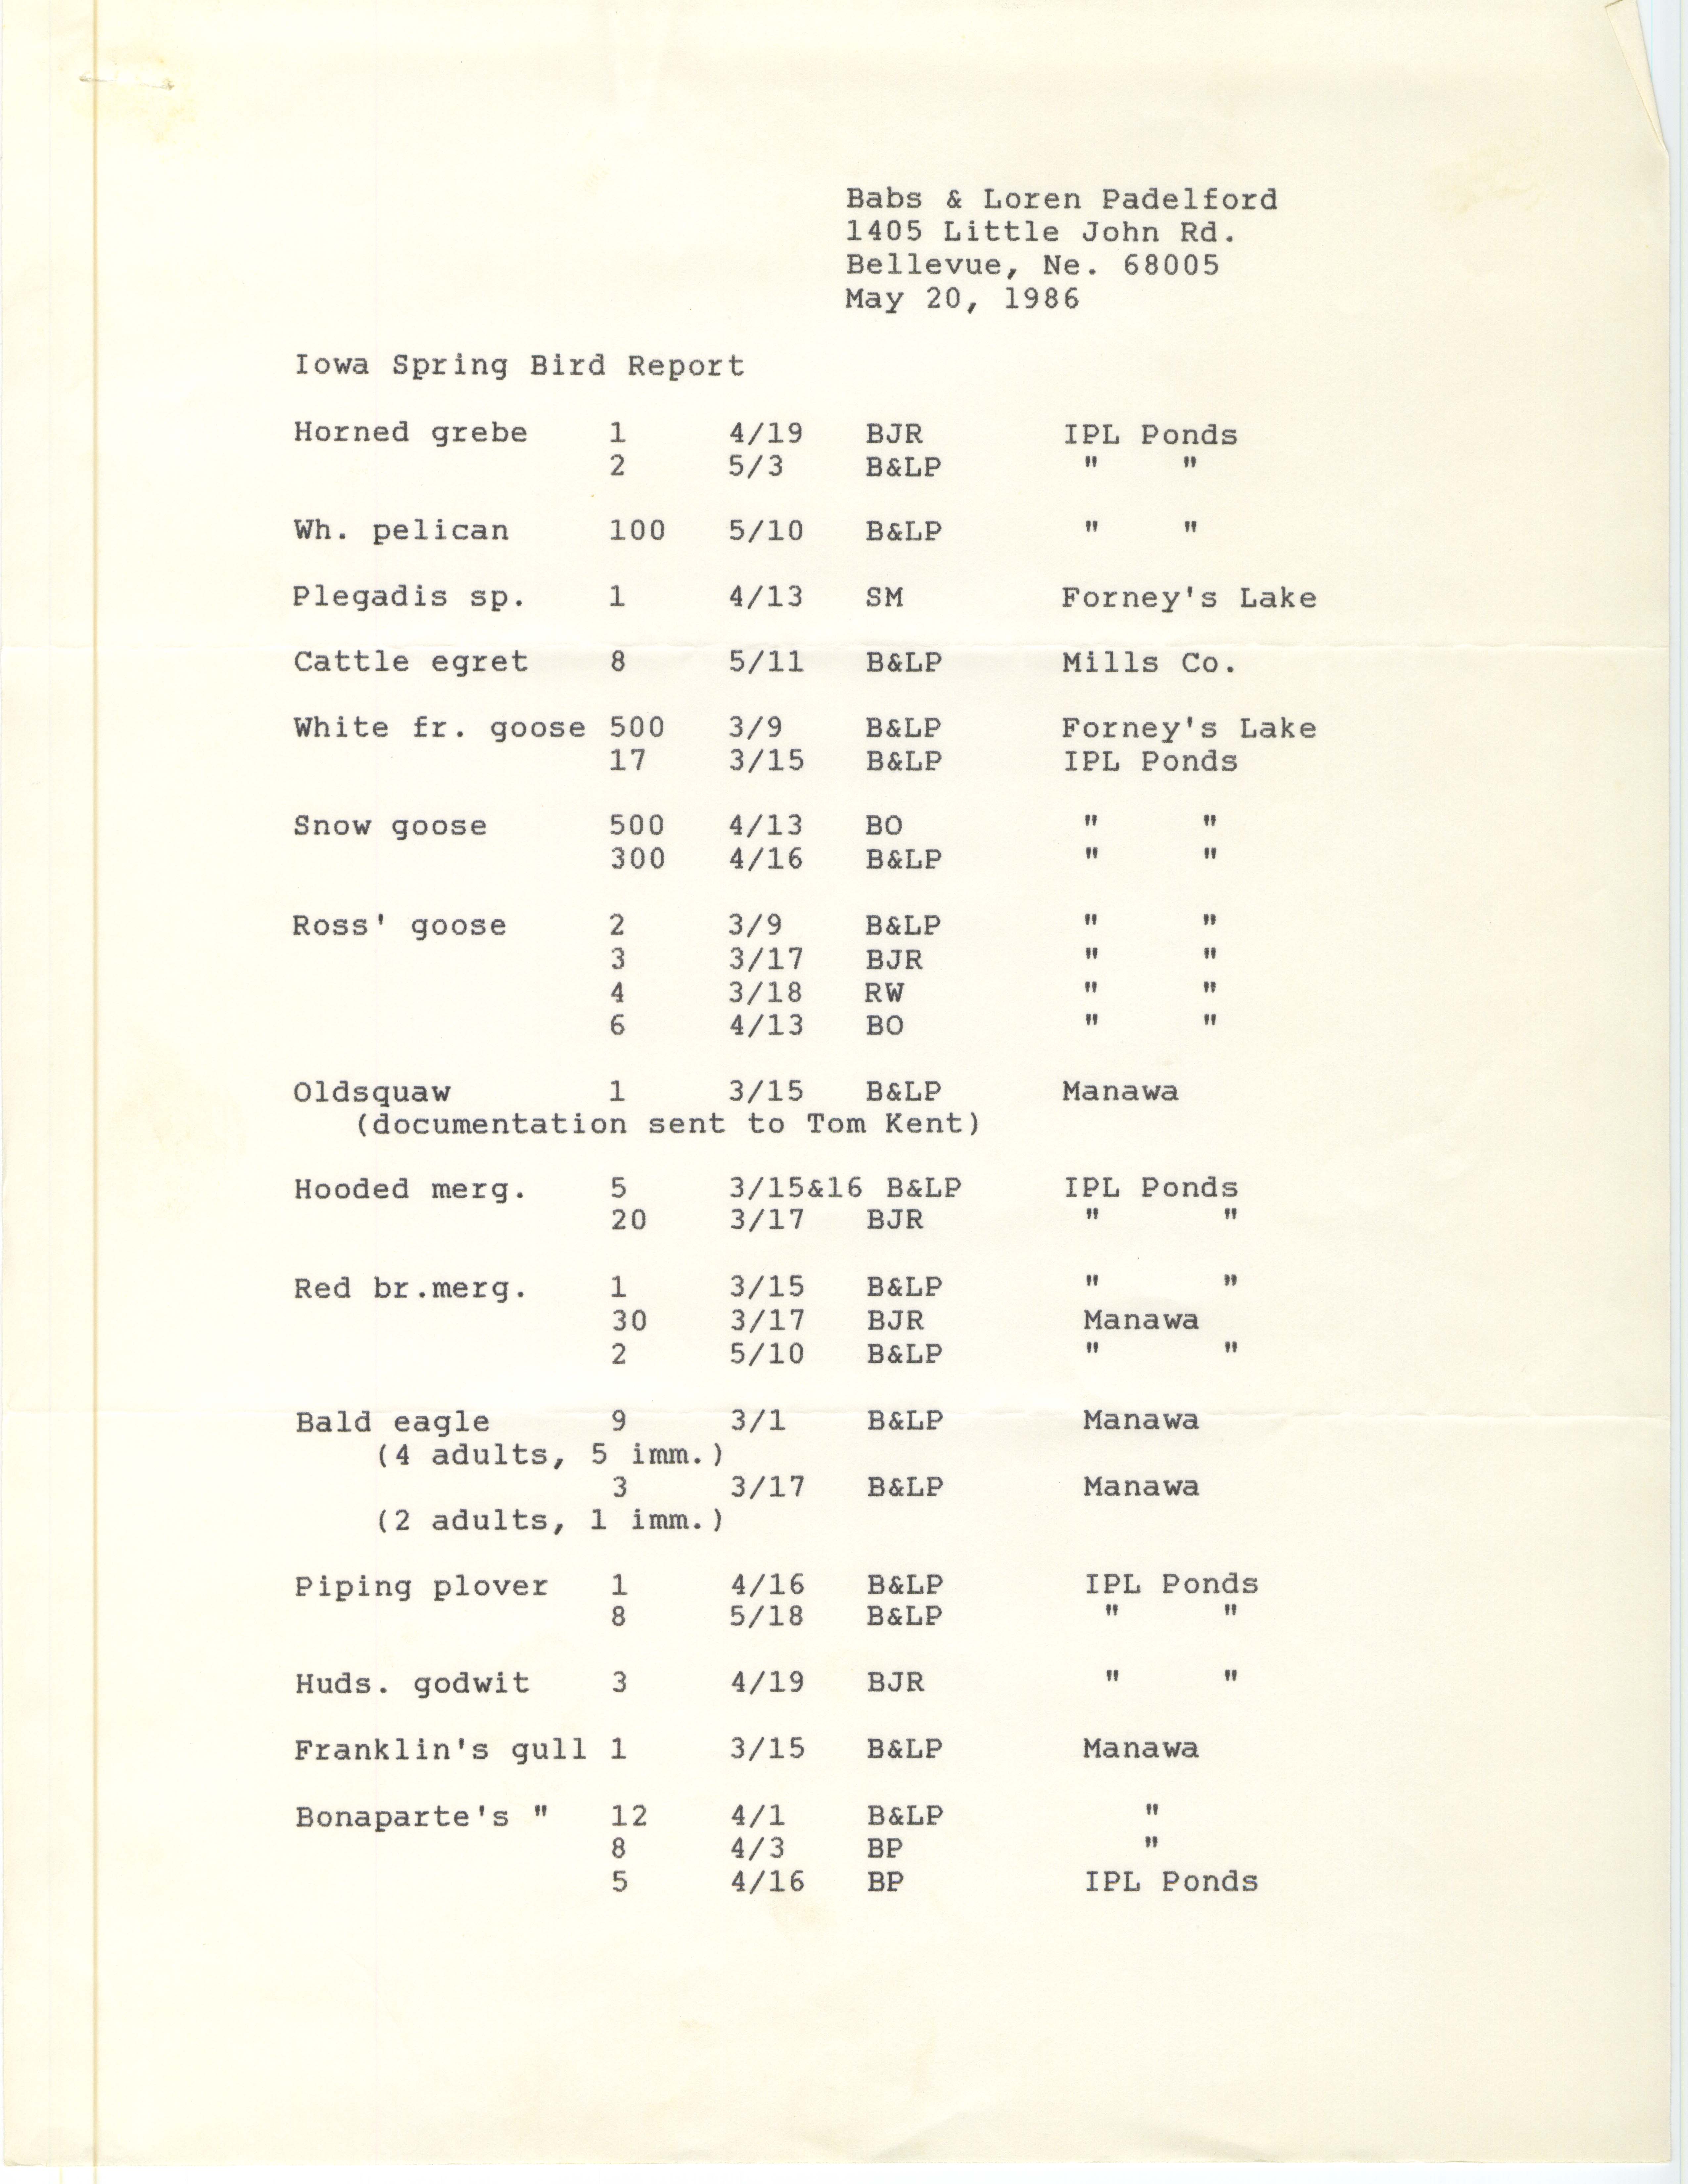 Iowa Spring bird report, Babs & Loren Padelford, May 20, 1986